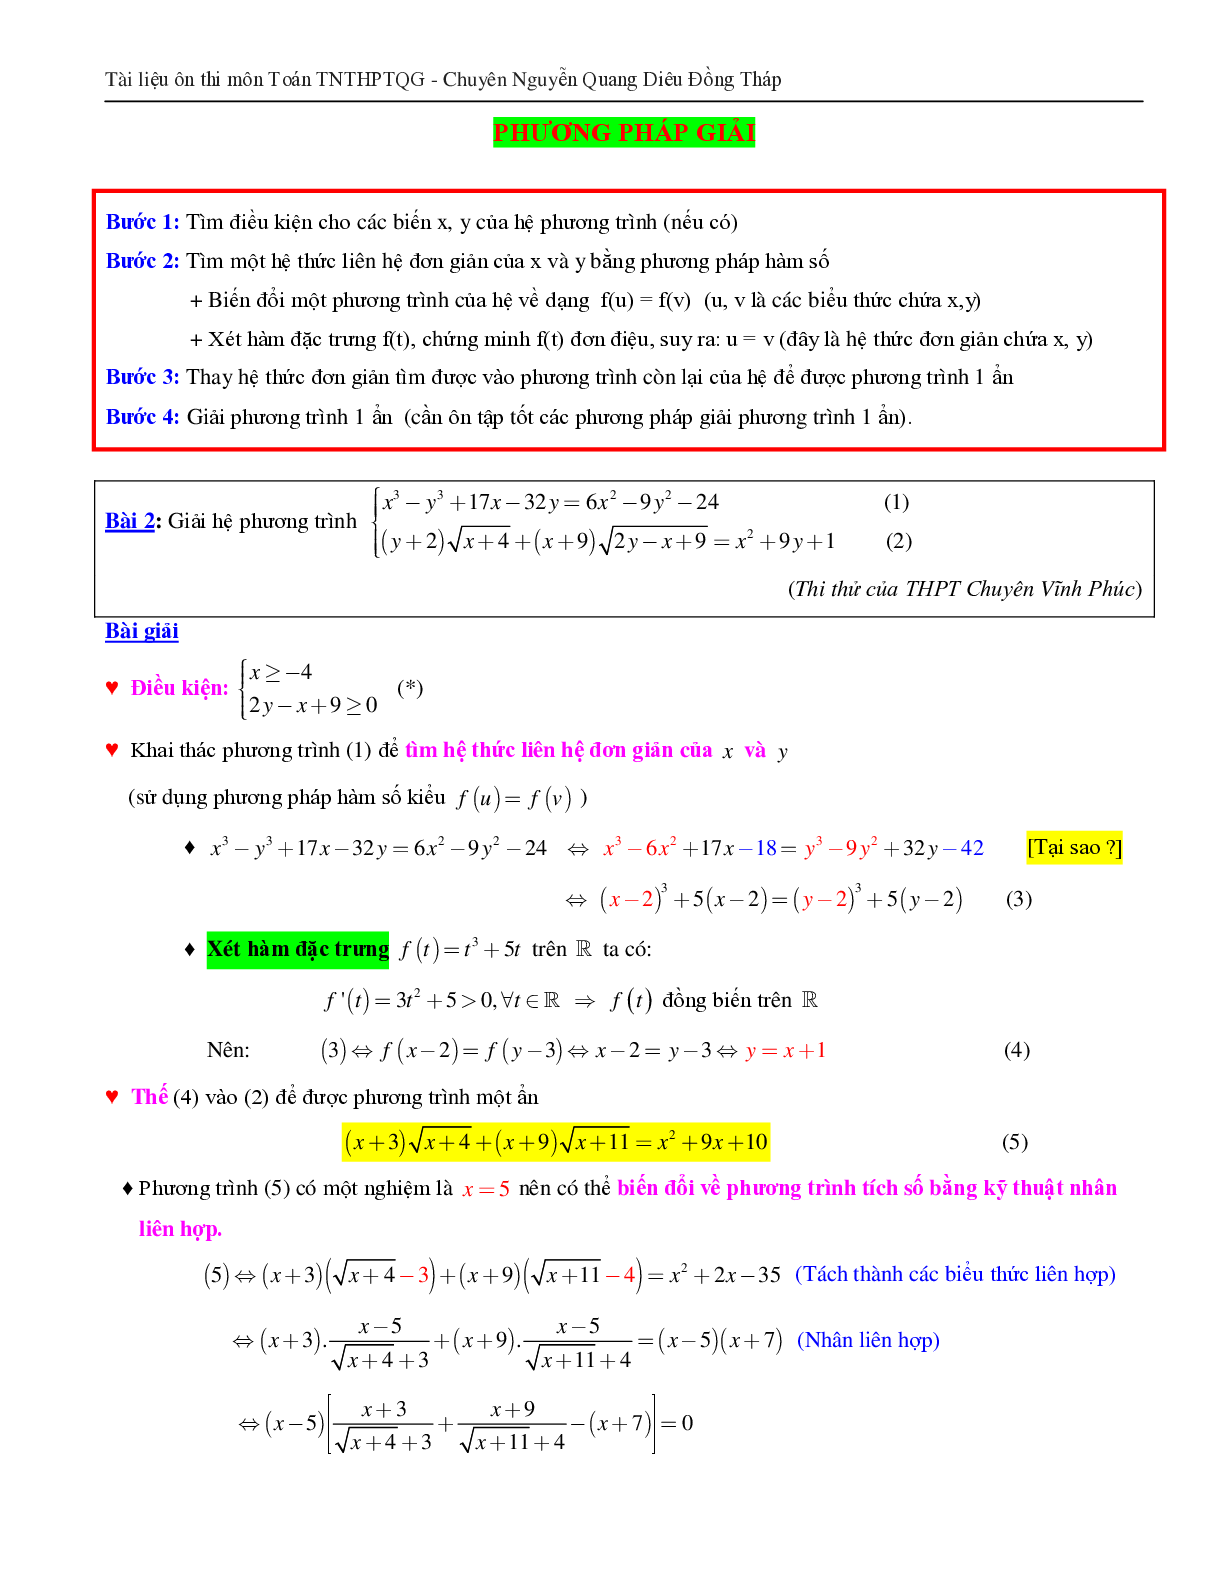 Giải hệ phương trình bằng phương pháp hàm số (trang 2)